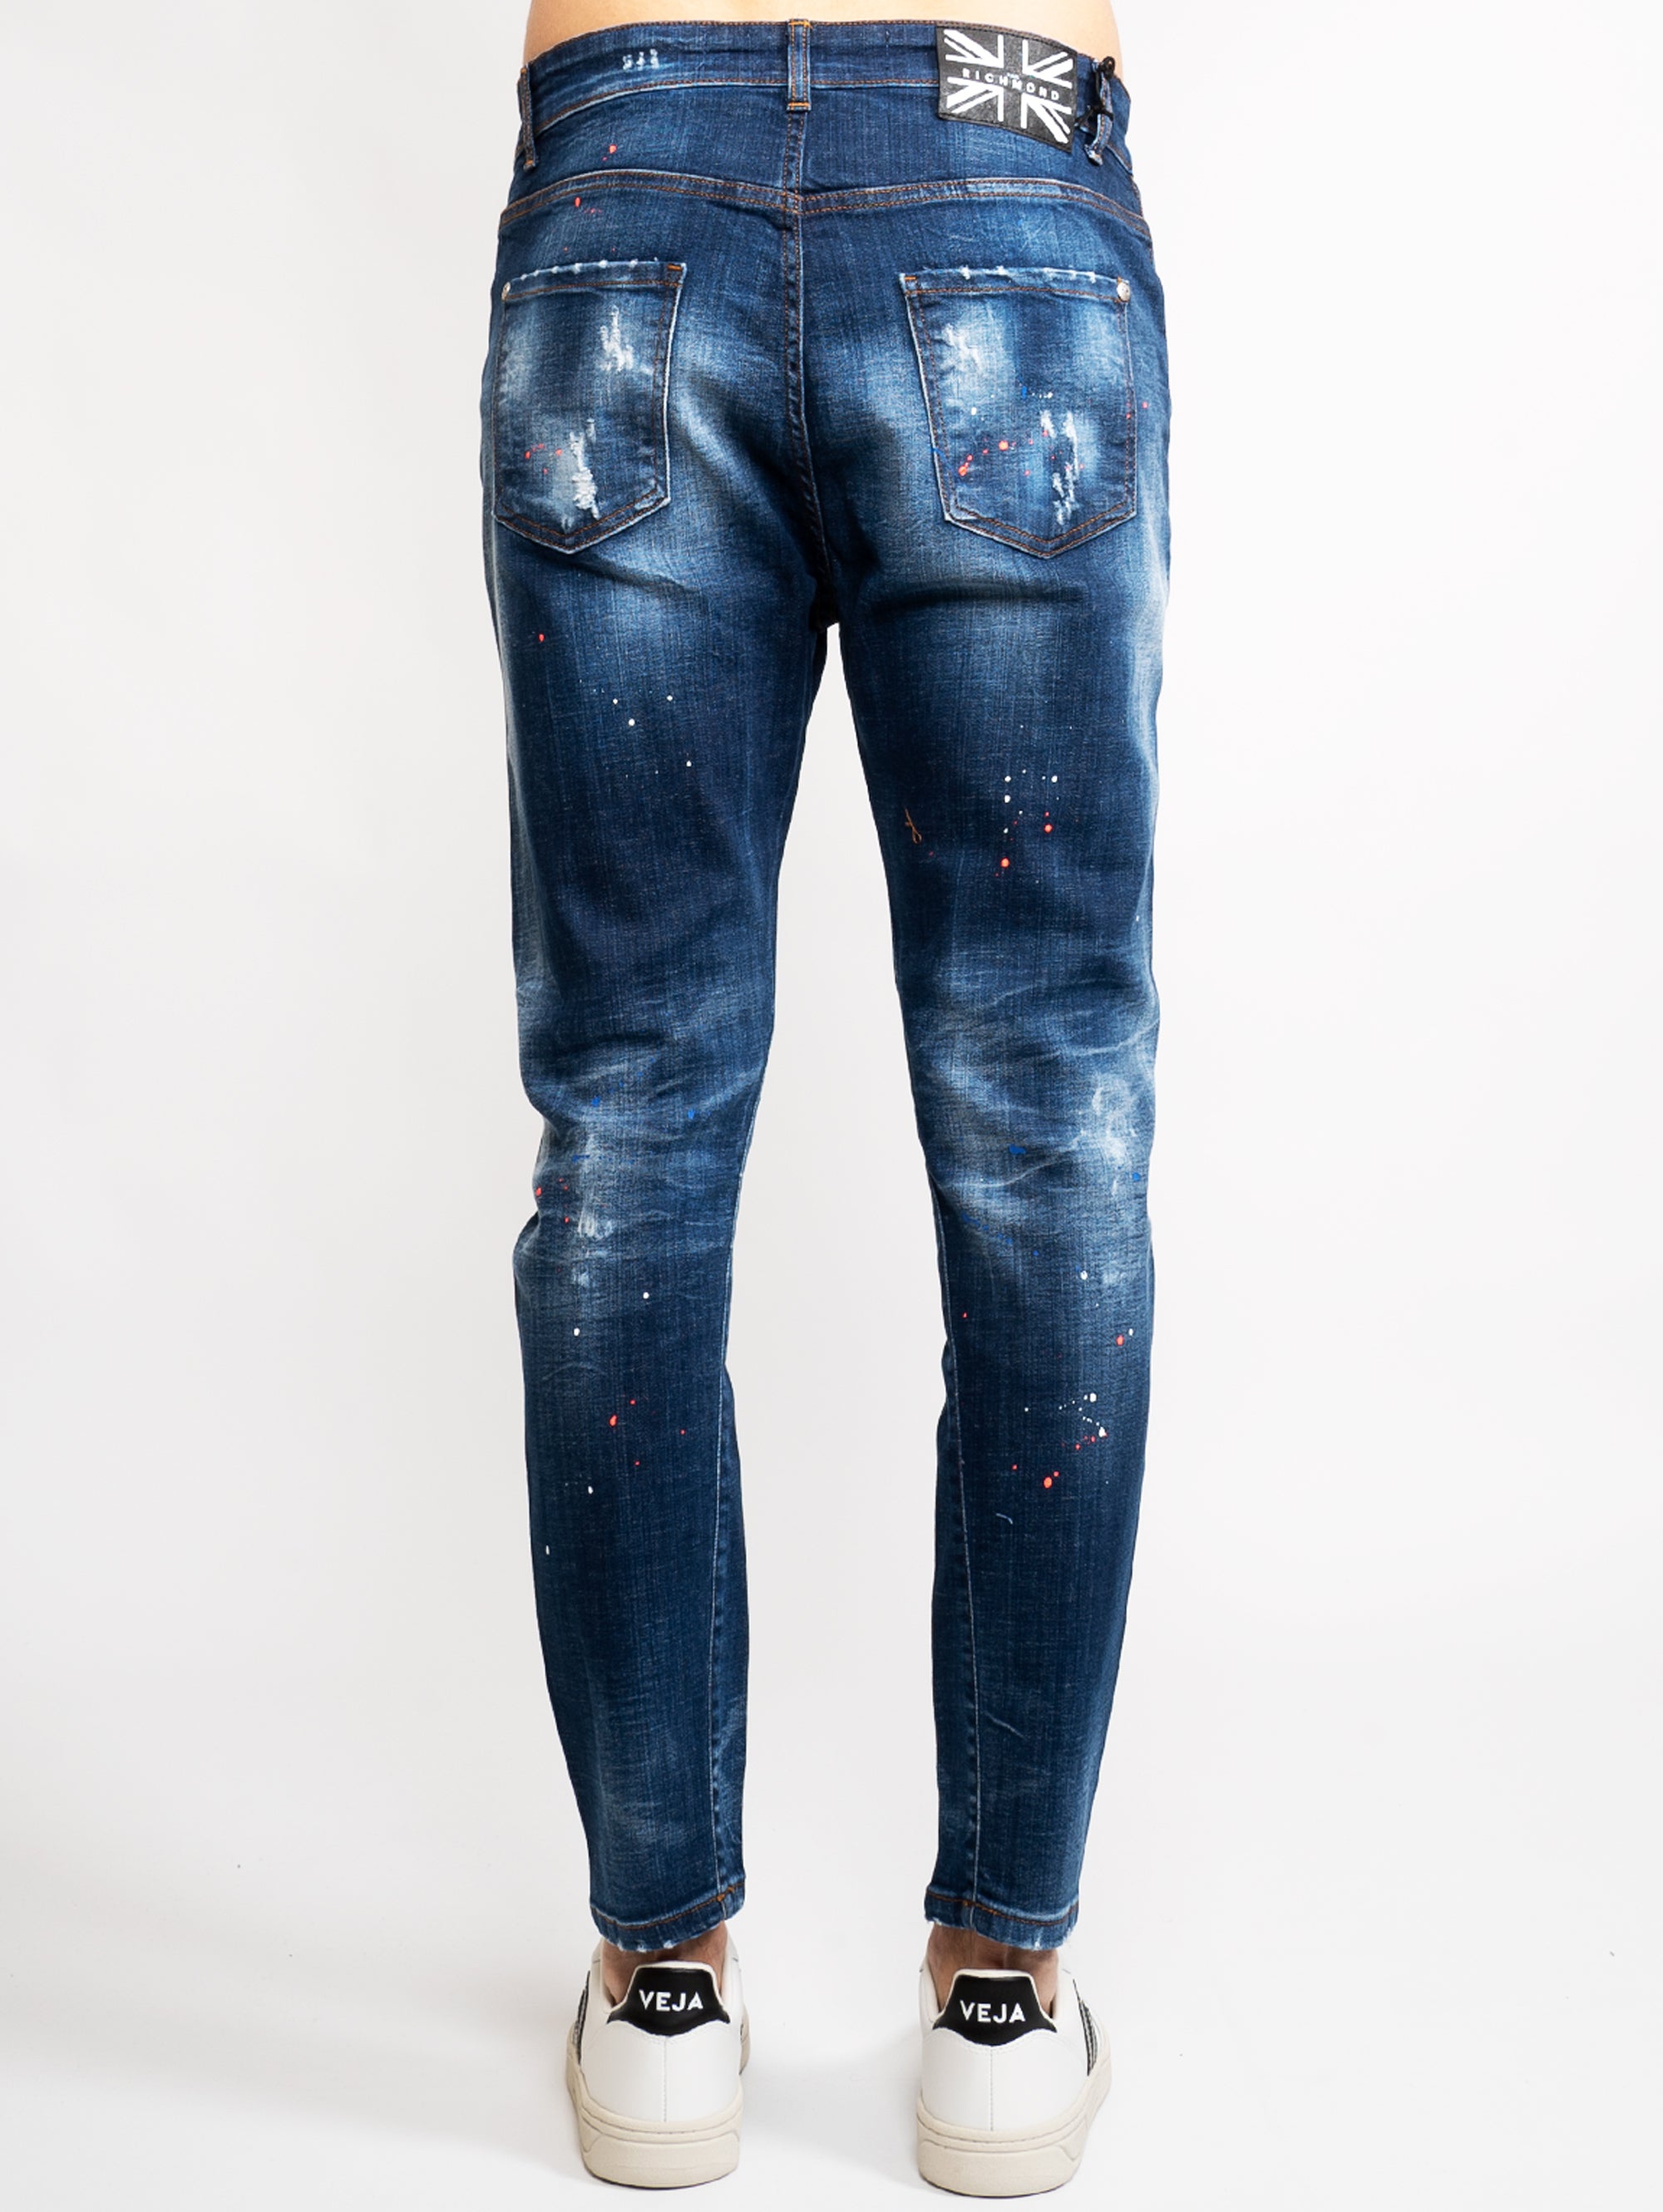 Jeans mit blauen Farbspritzern